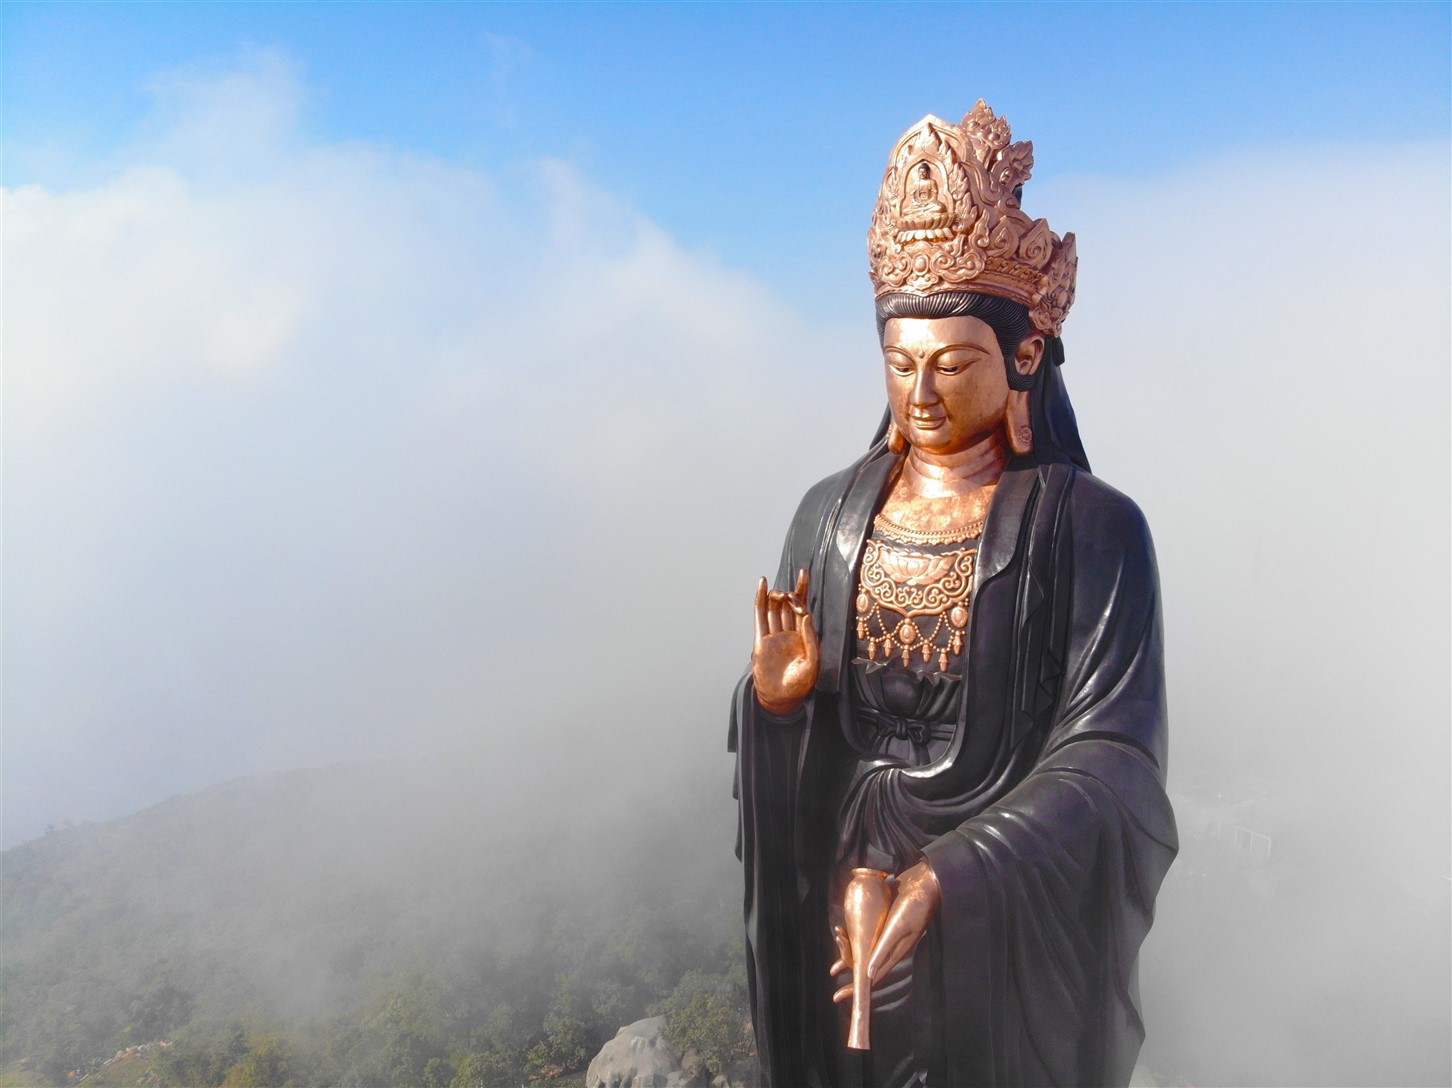 Ngắm nhìn tượng Phật bằng đồng uy nghiêm trên núi Bà Đen